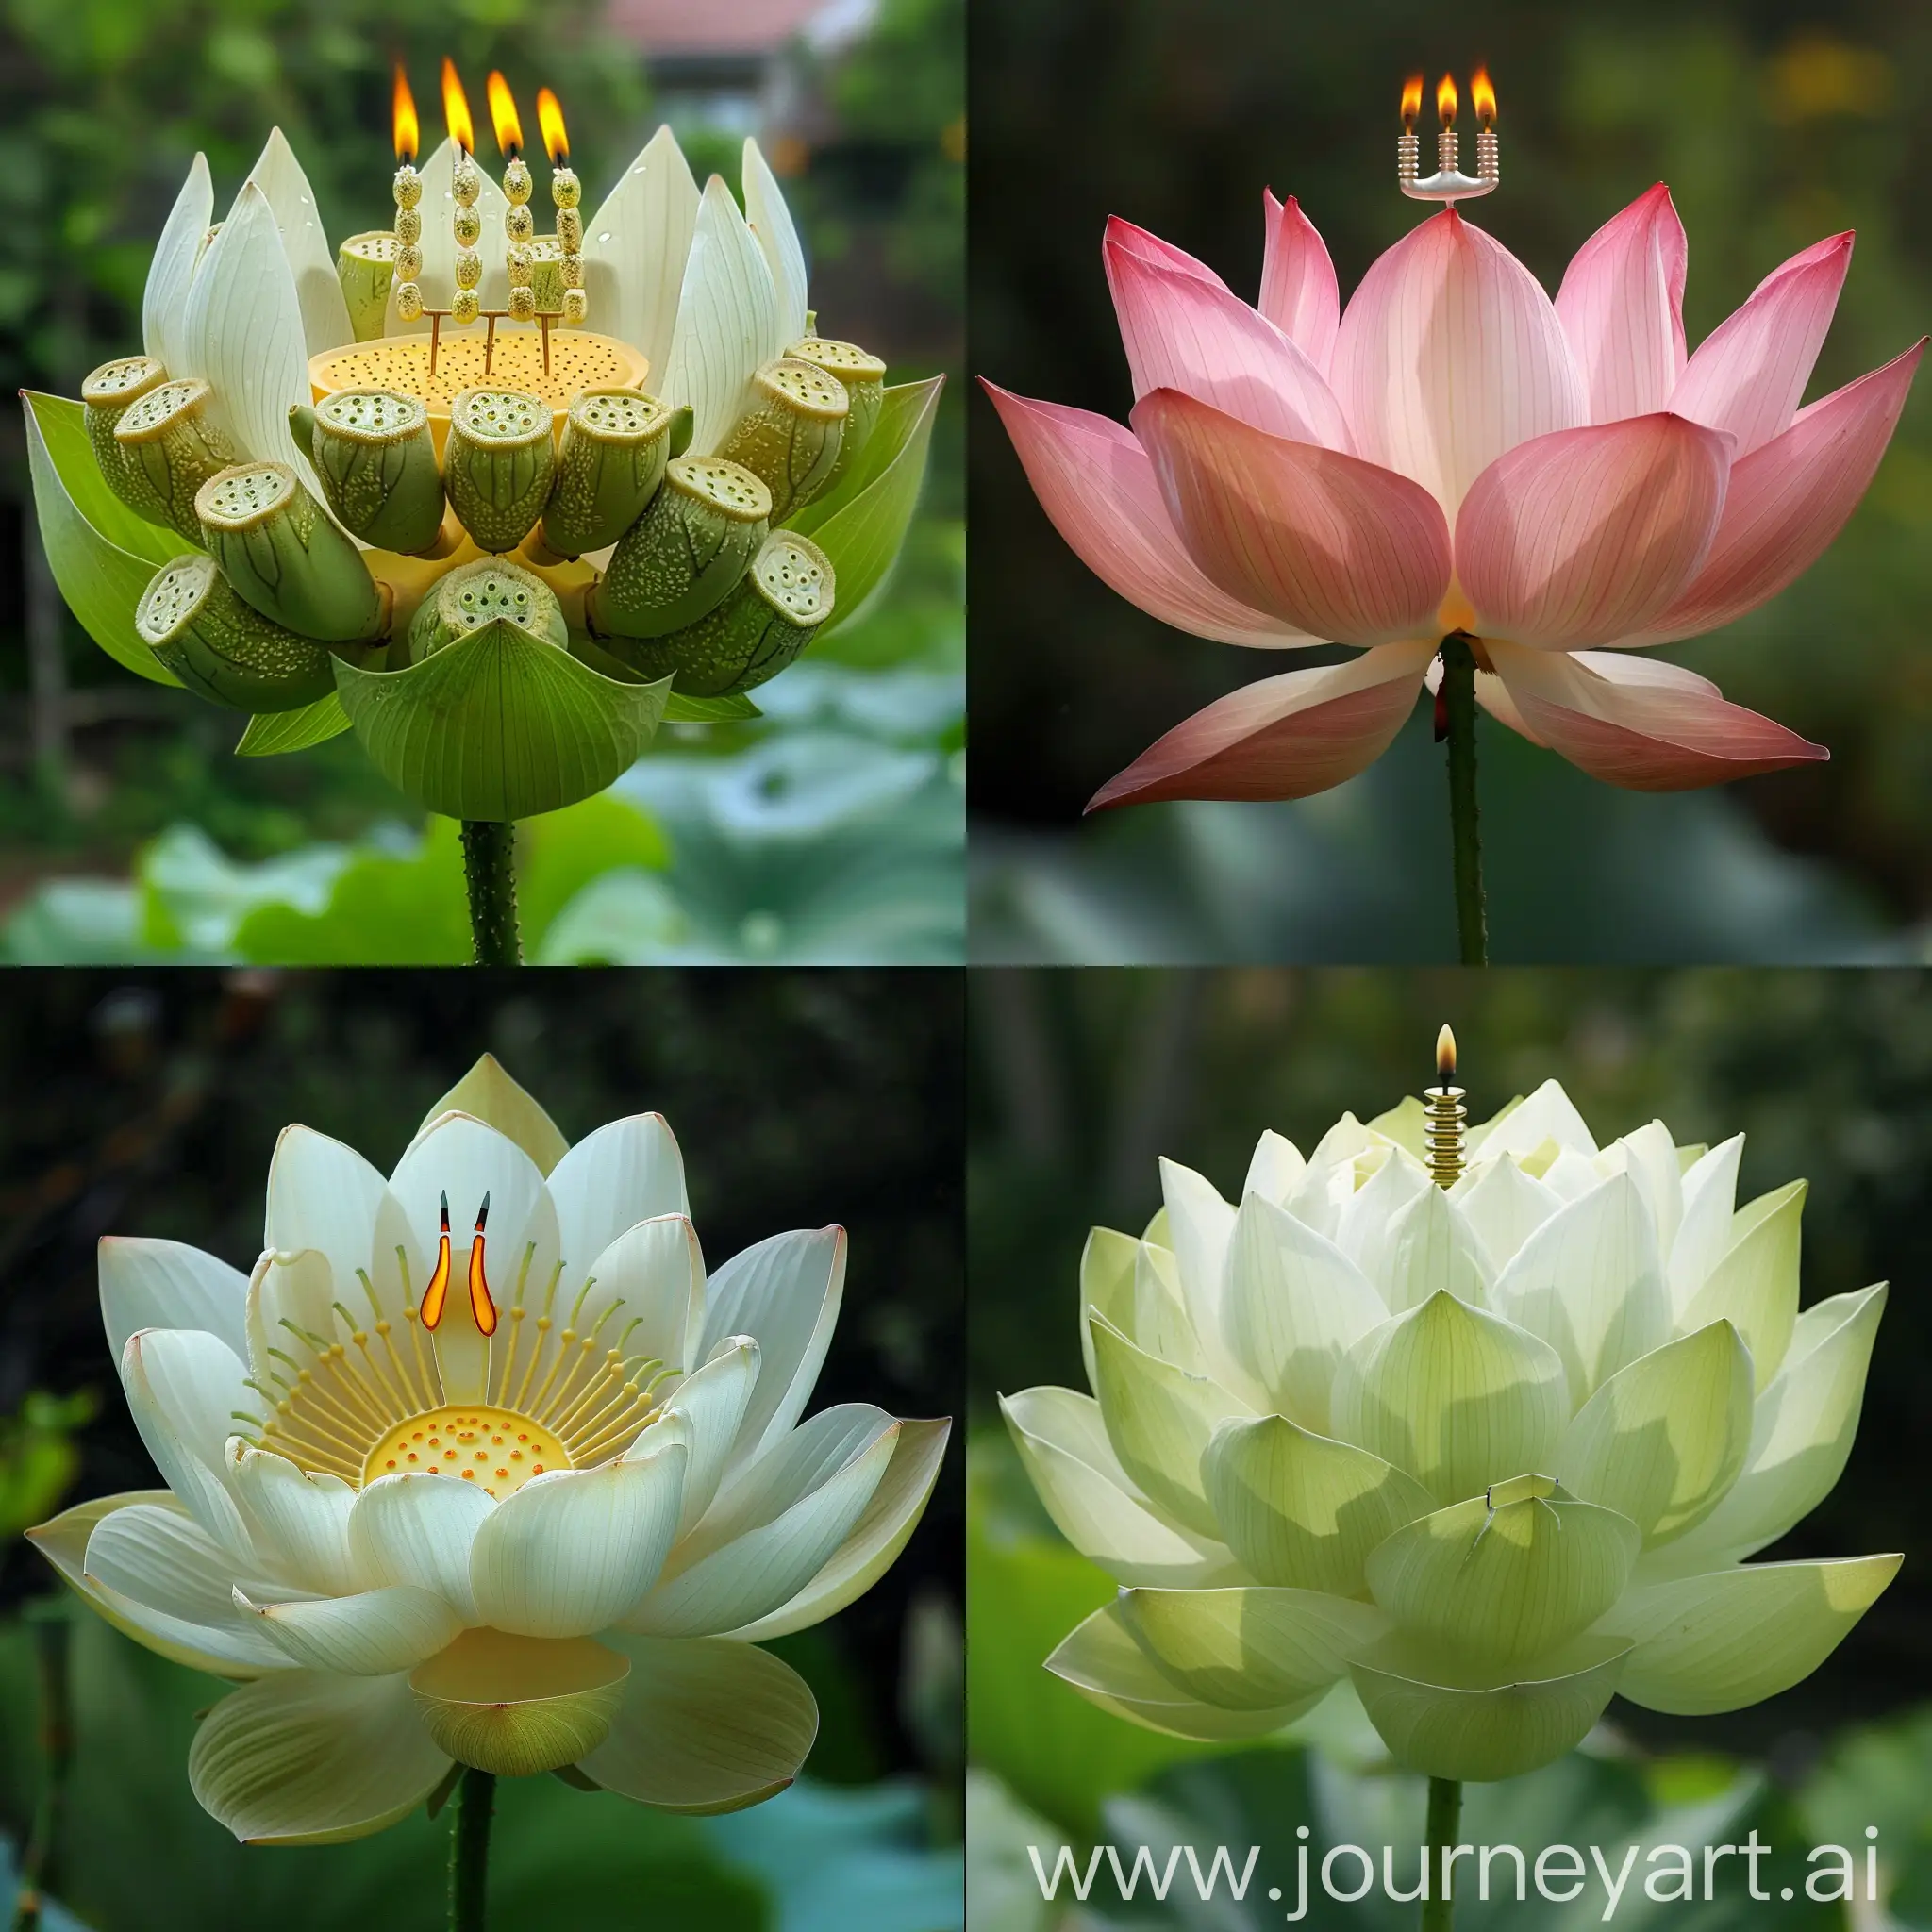 Lotus-Flower-Menorah-Serene-Symbolism-in-Nature